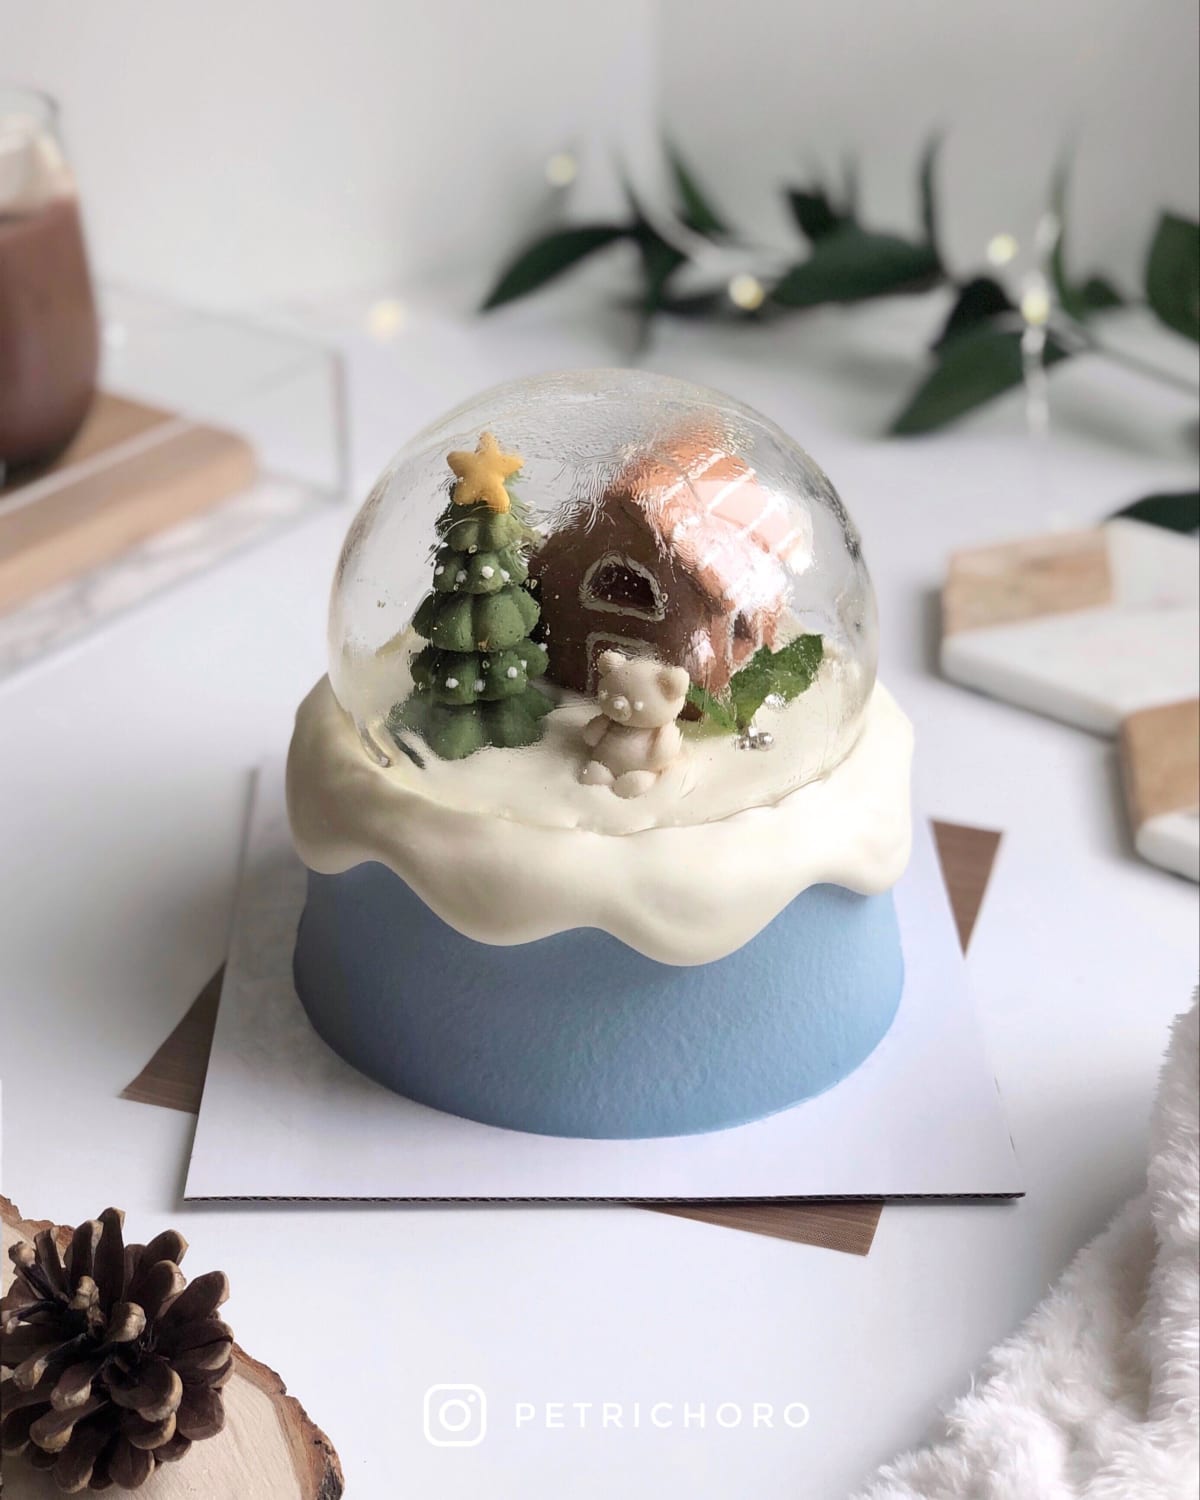 made a snow globe cake for christmas!